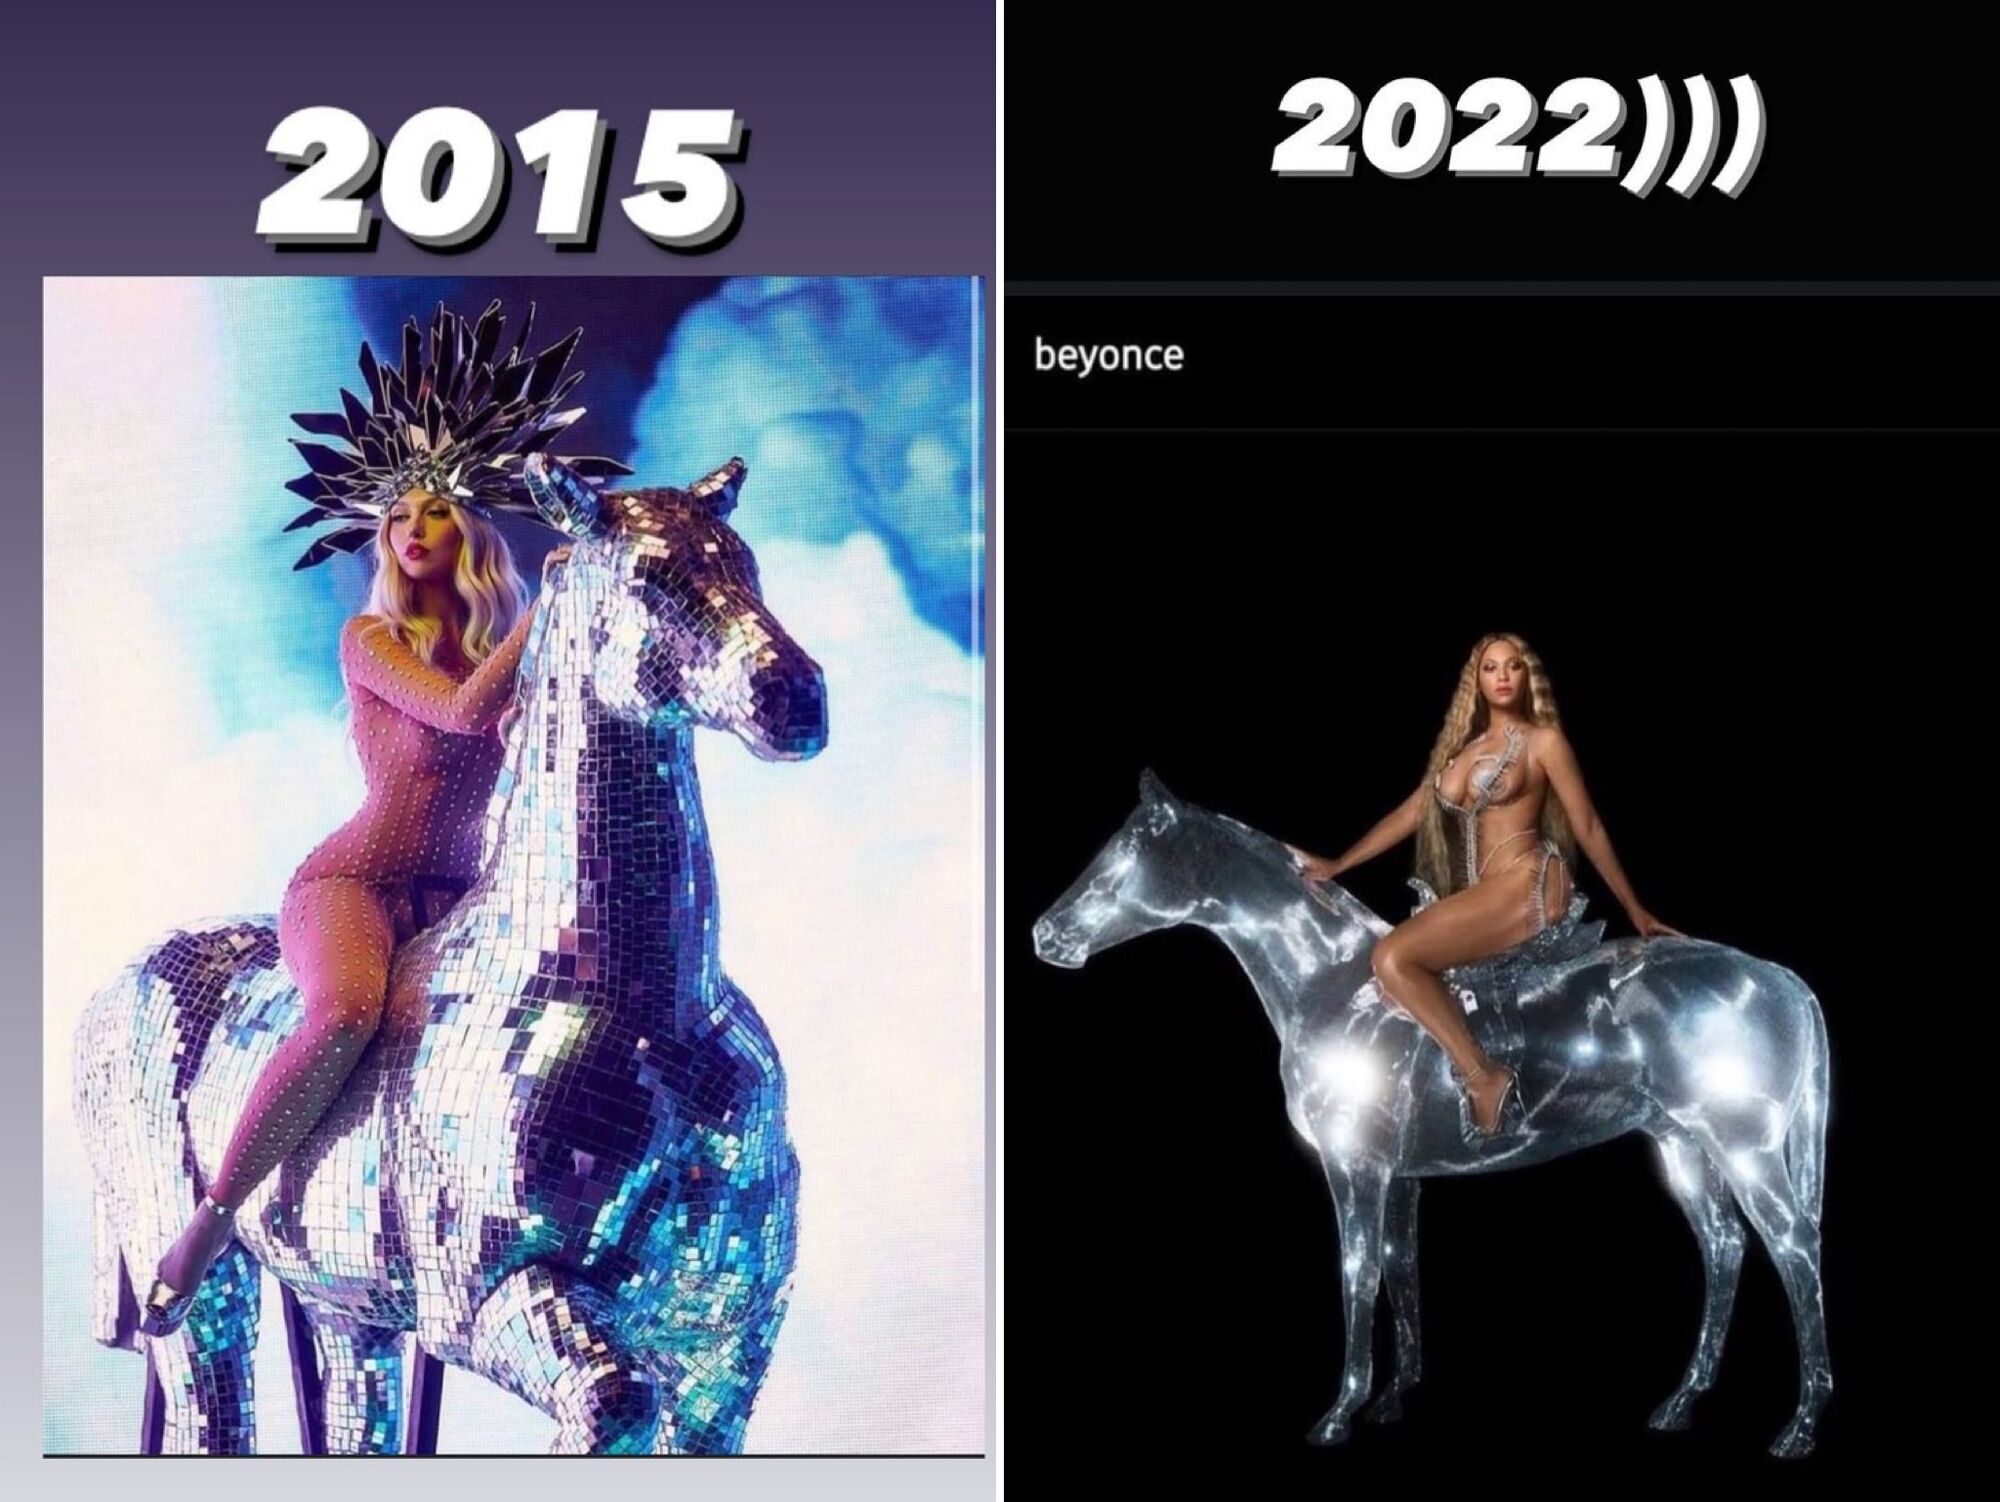 Полуголая Бейонсе на коне повторила образ Поляковой 2015 года. Фотосравнение